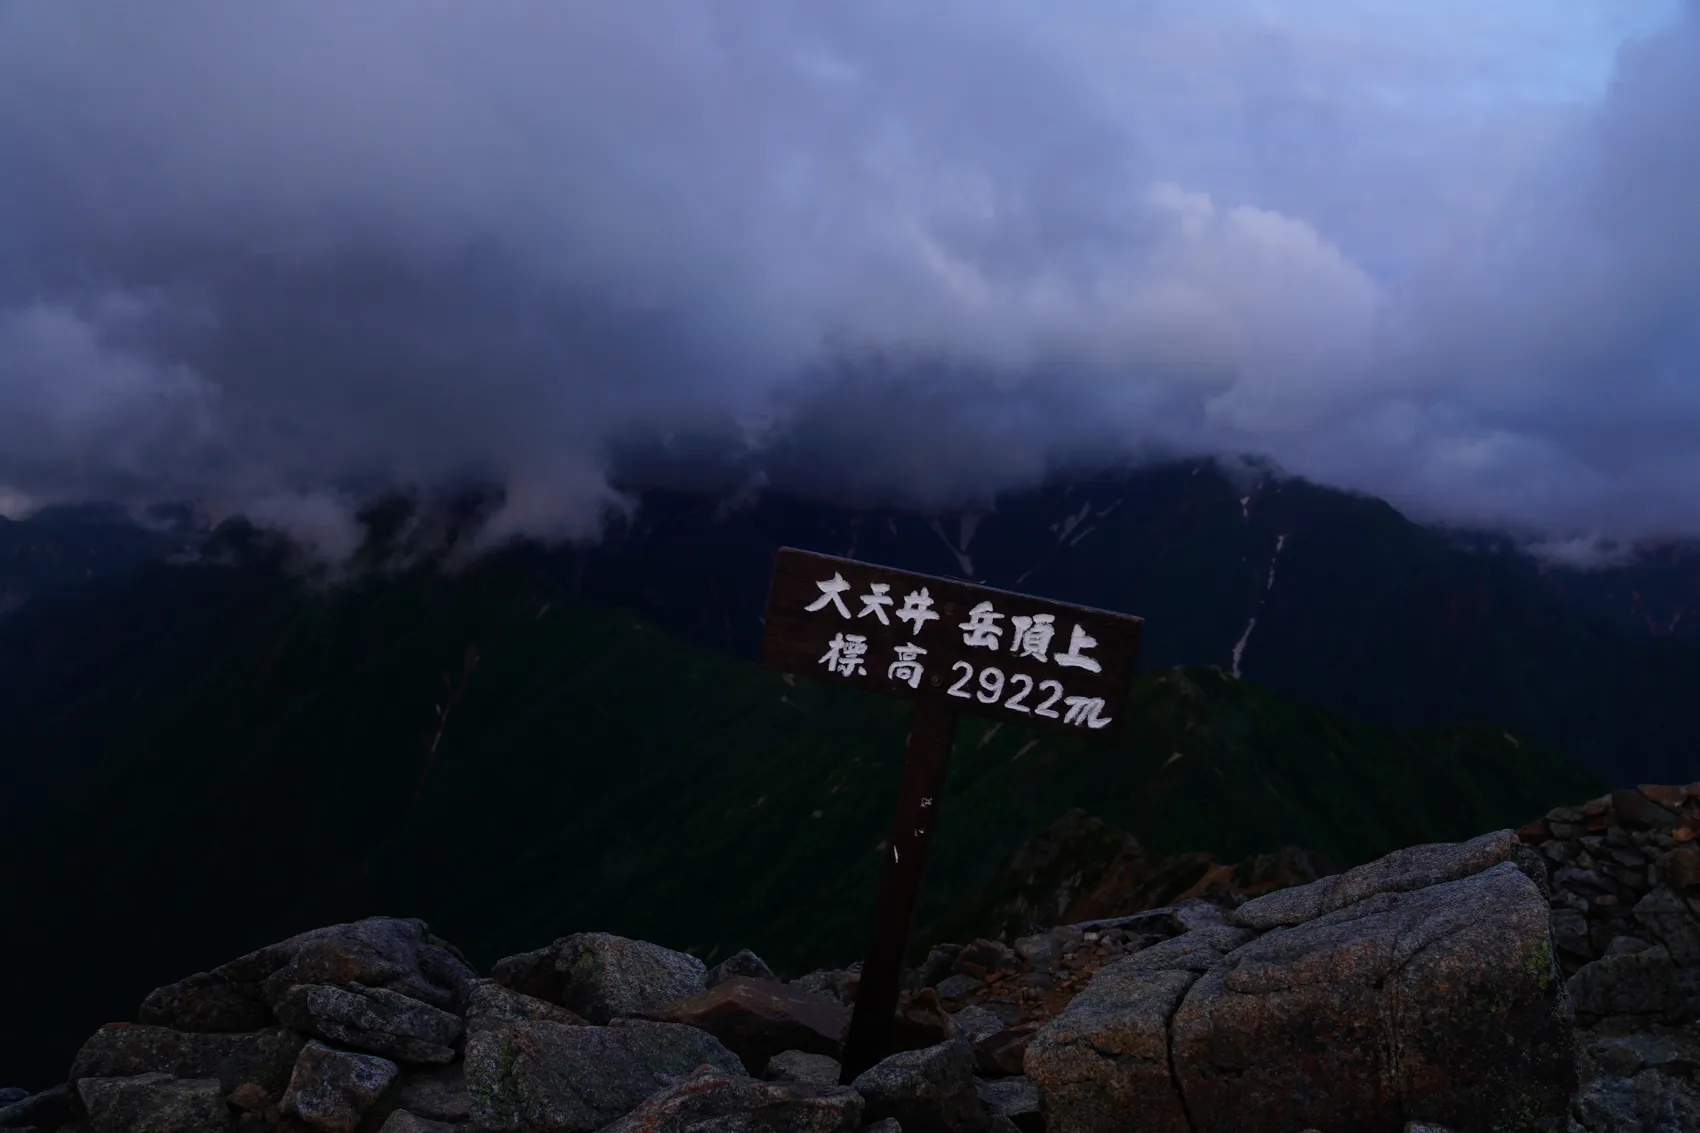 大天井岳 テント泊1泊2日登山